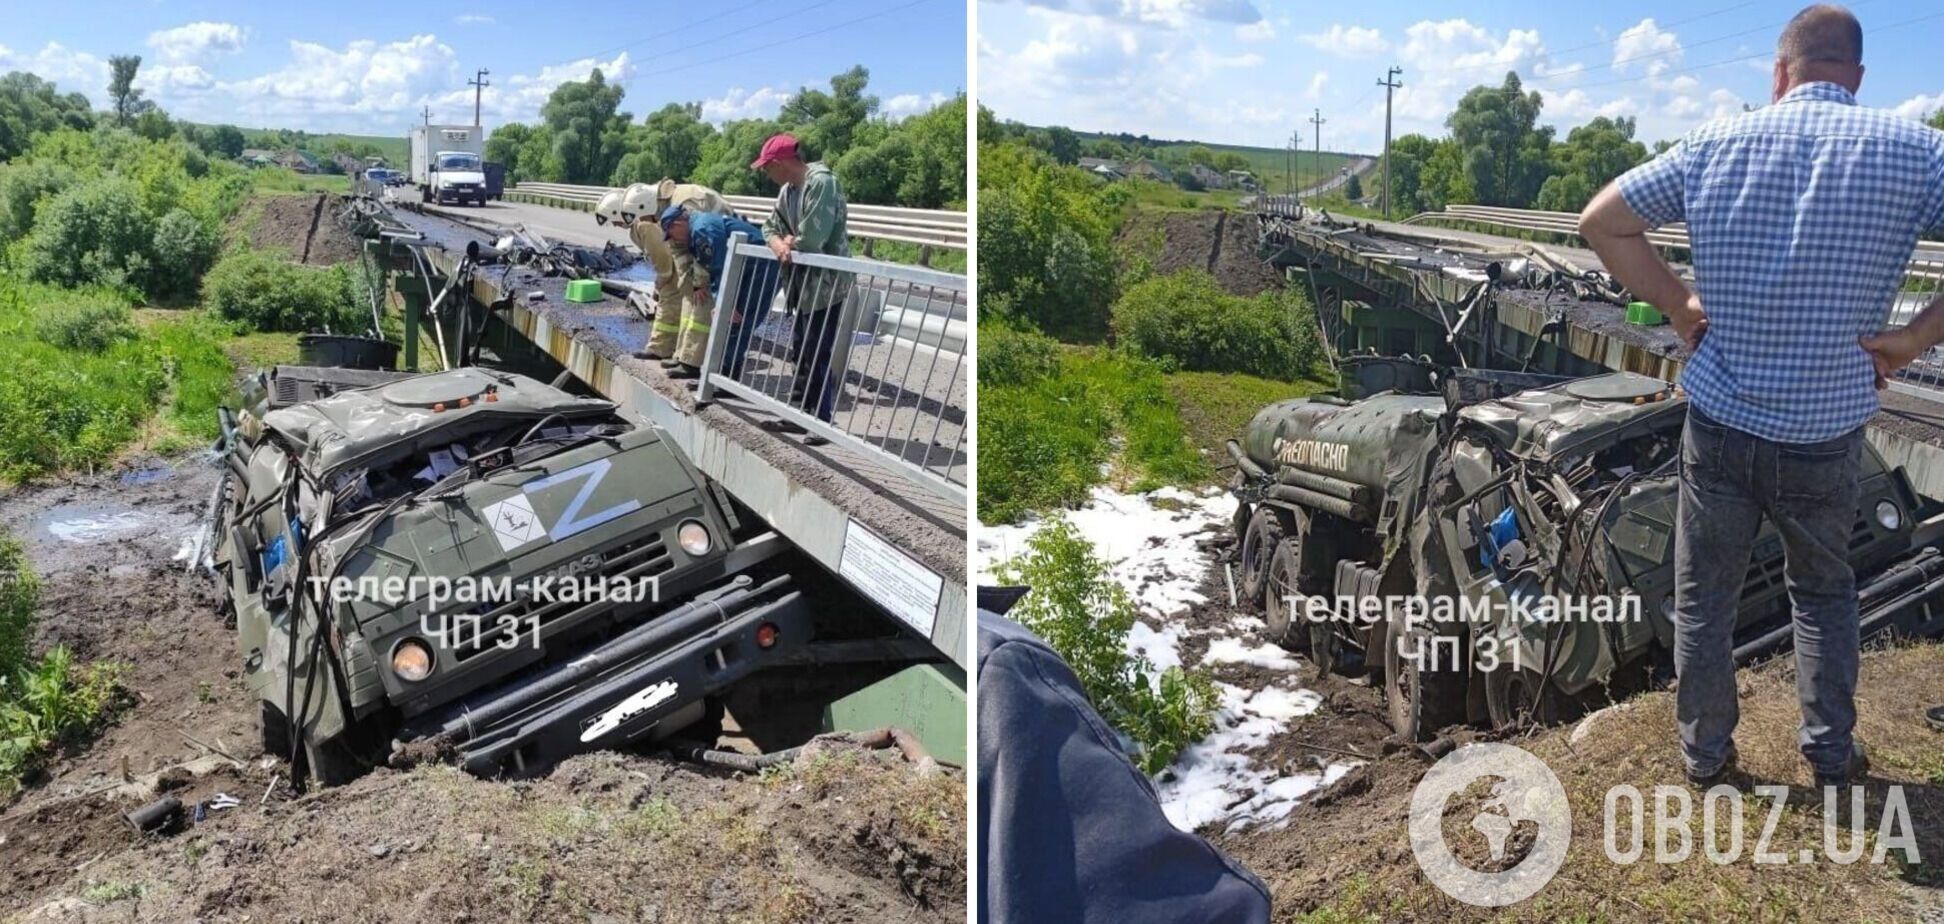 Горючее не доехало до оккупантов: в Белгородской области Z-бензовоз слетел с моста и загорелся. Фото